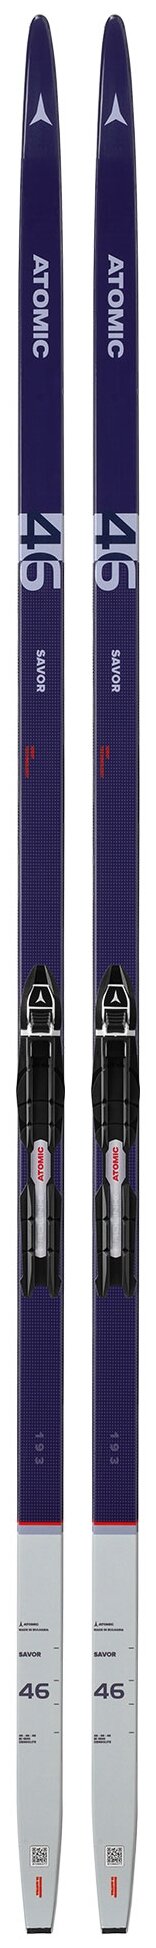 Лыжи для классического хода SAVOR 46 GRIP + PA, размер:179, ABPM00316